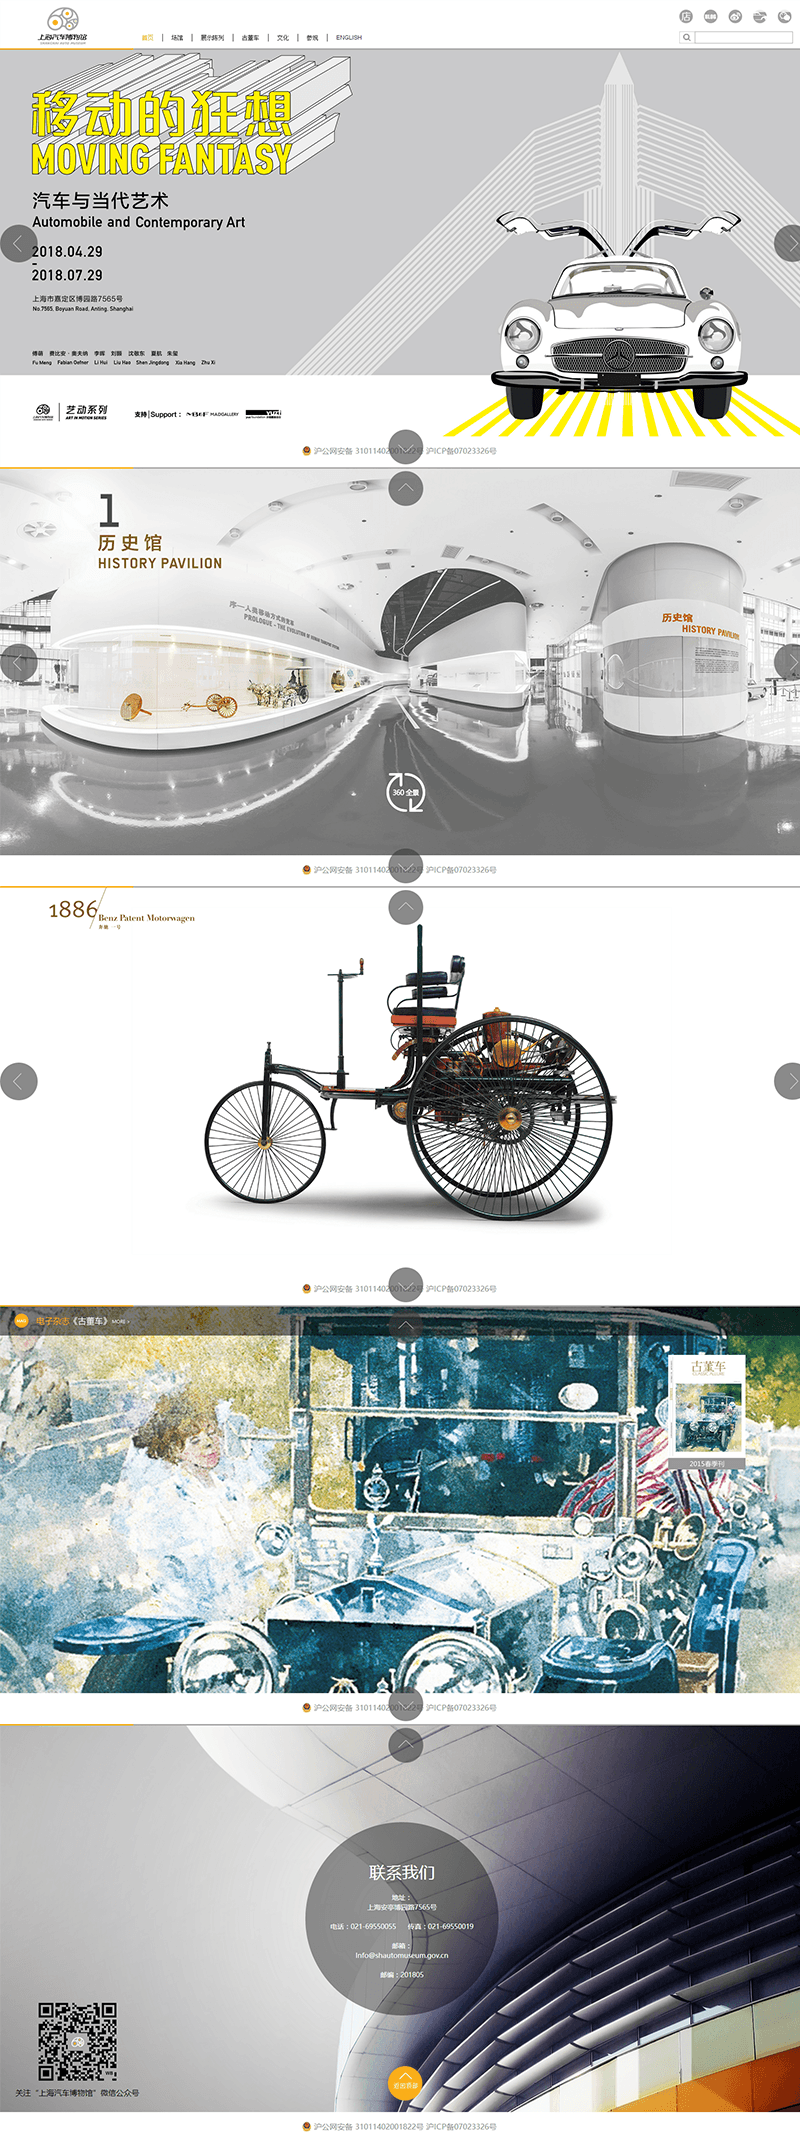 上海汽车博物馆网站建设设计效果图-2